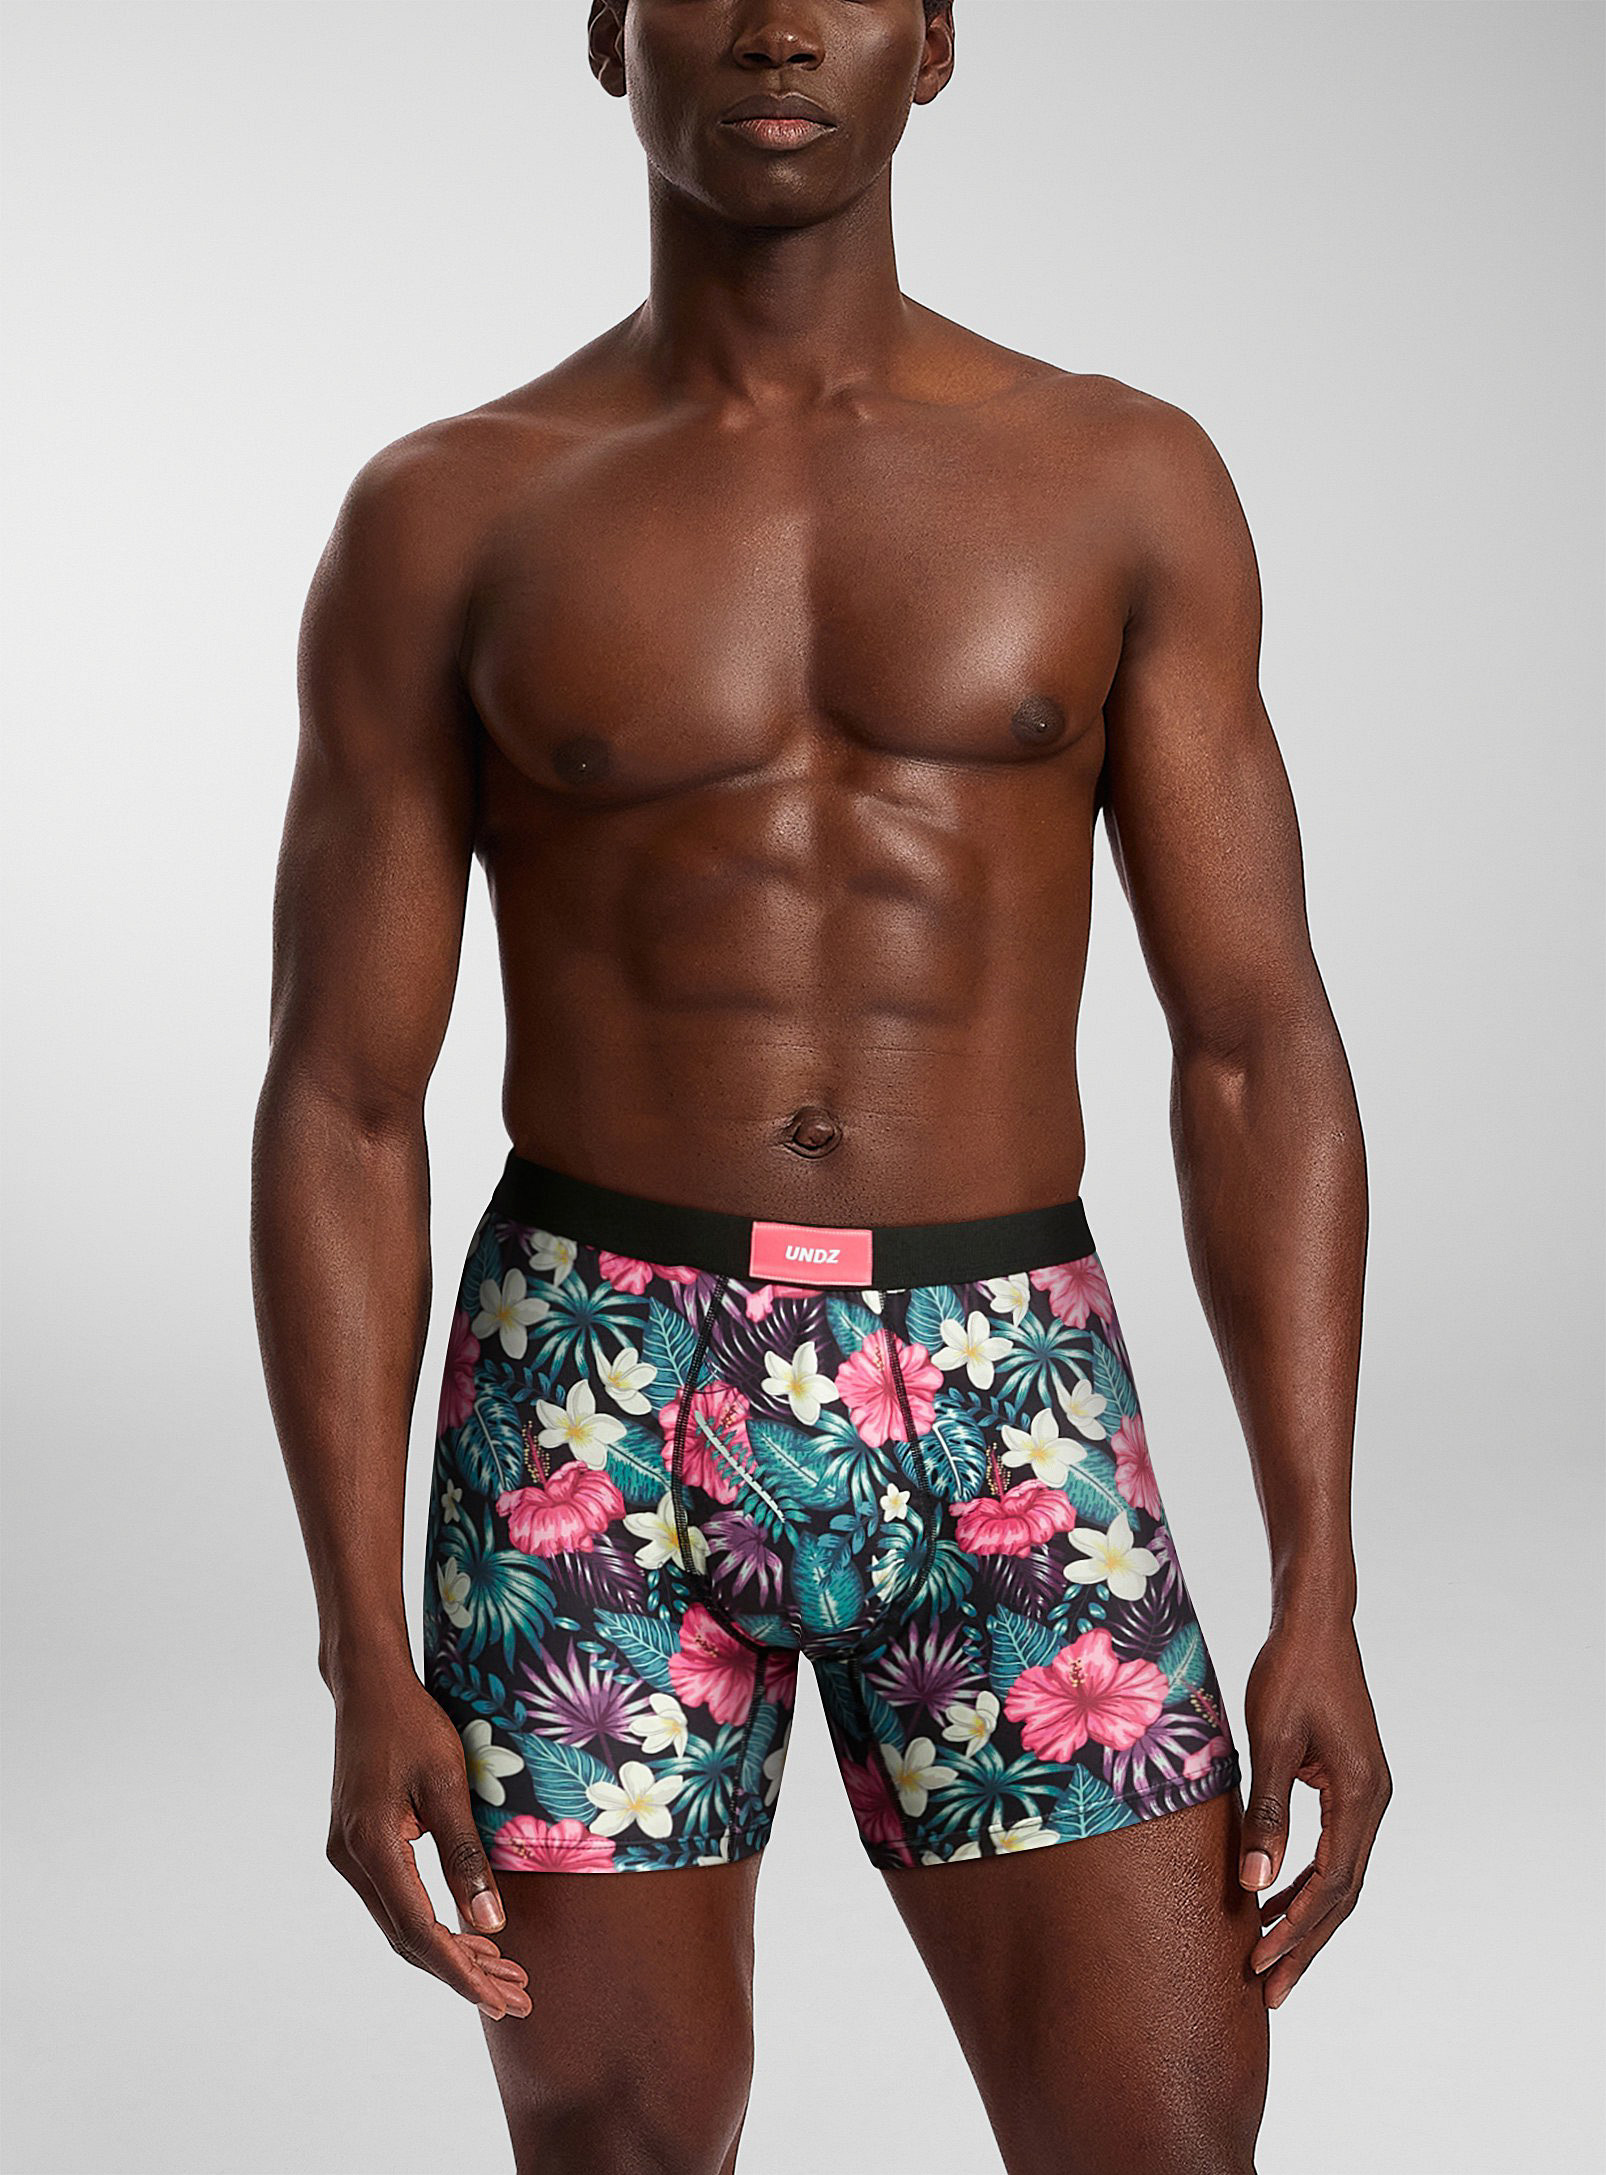 Undz - Men's Tropical flower boxer brief